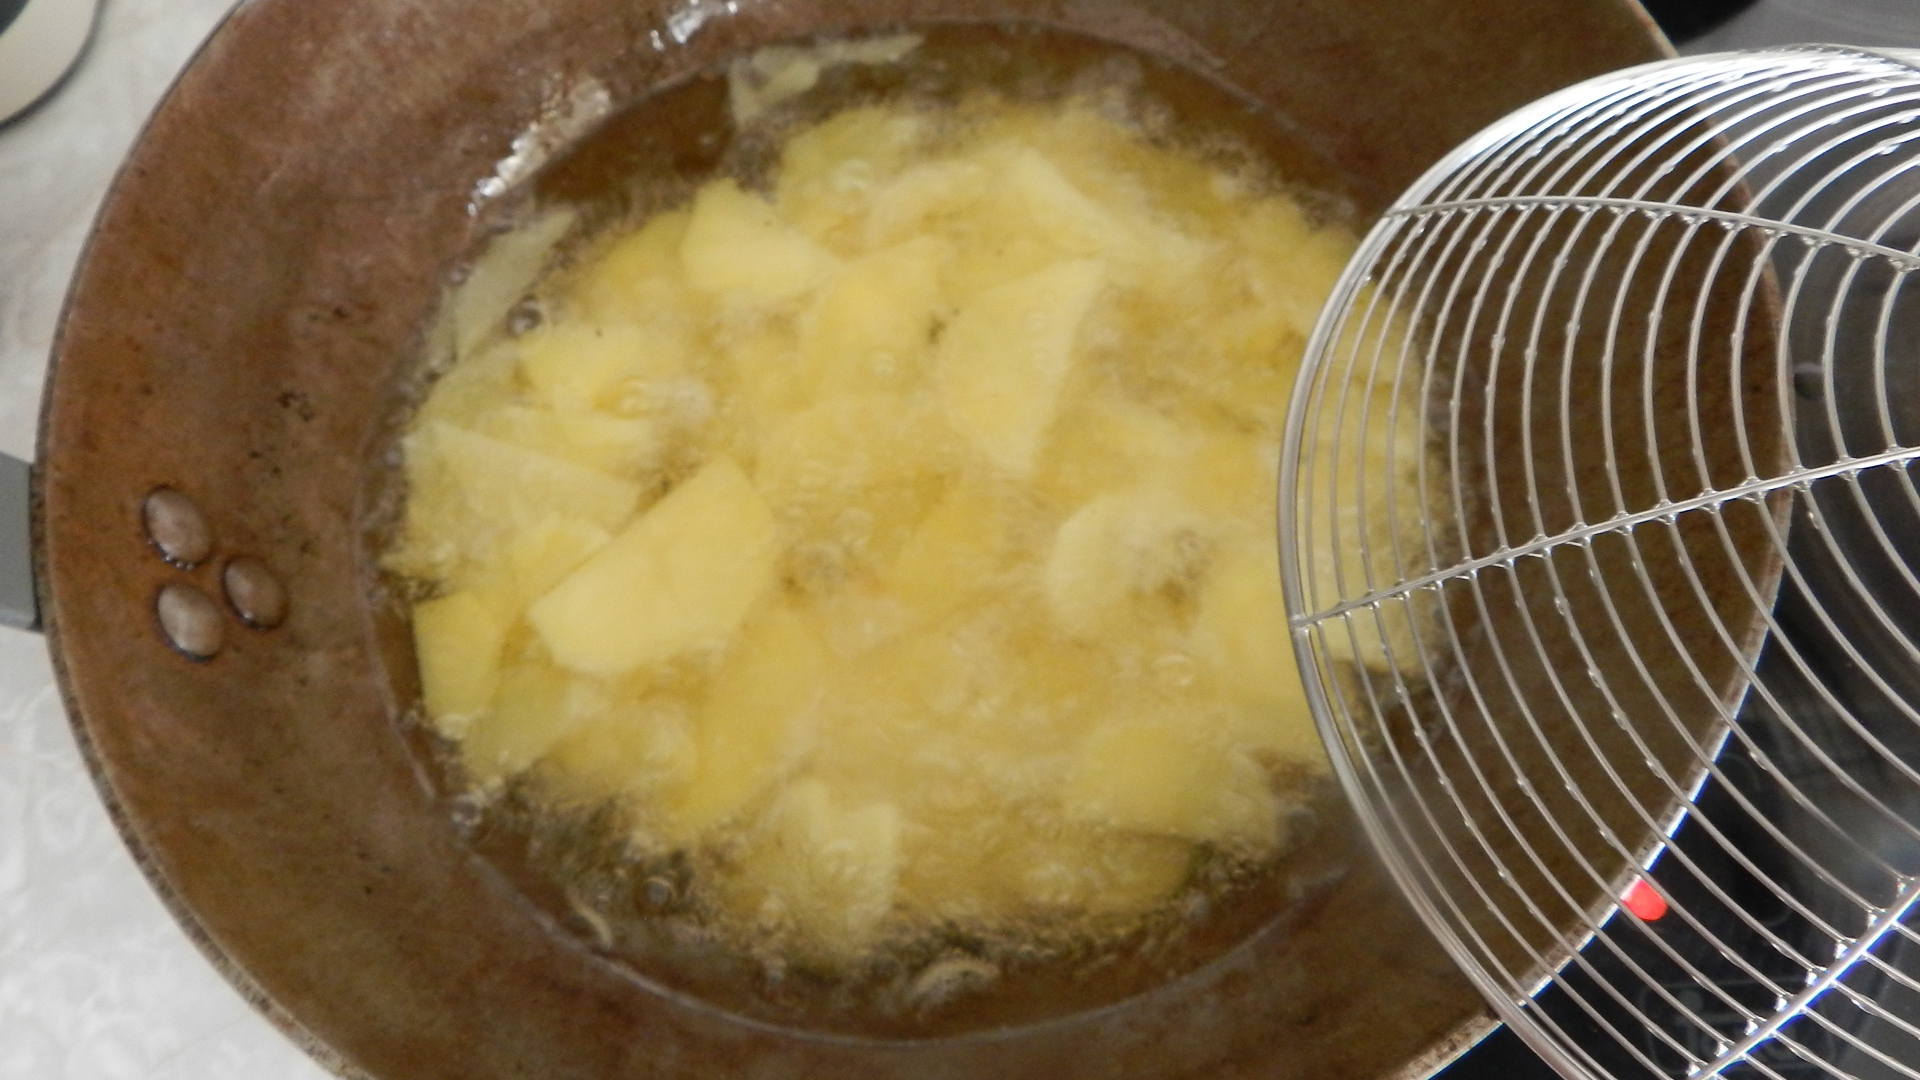 [COCINA] hoy voy a hacer la tortilla de patatas casi perfecta....